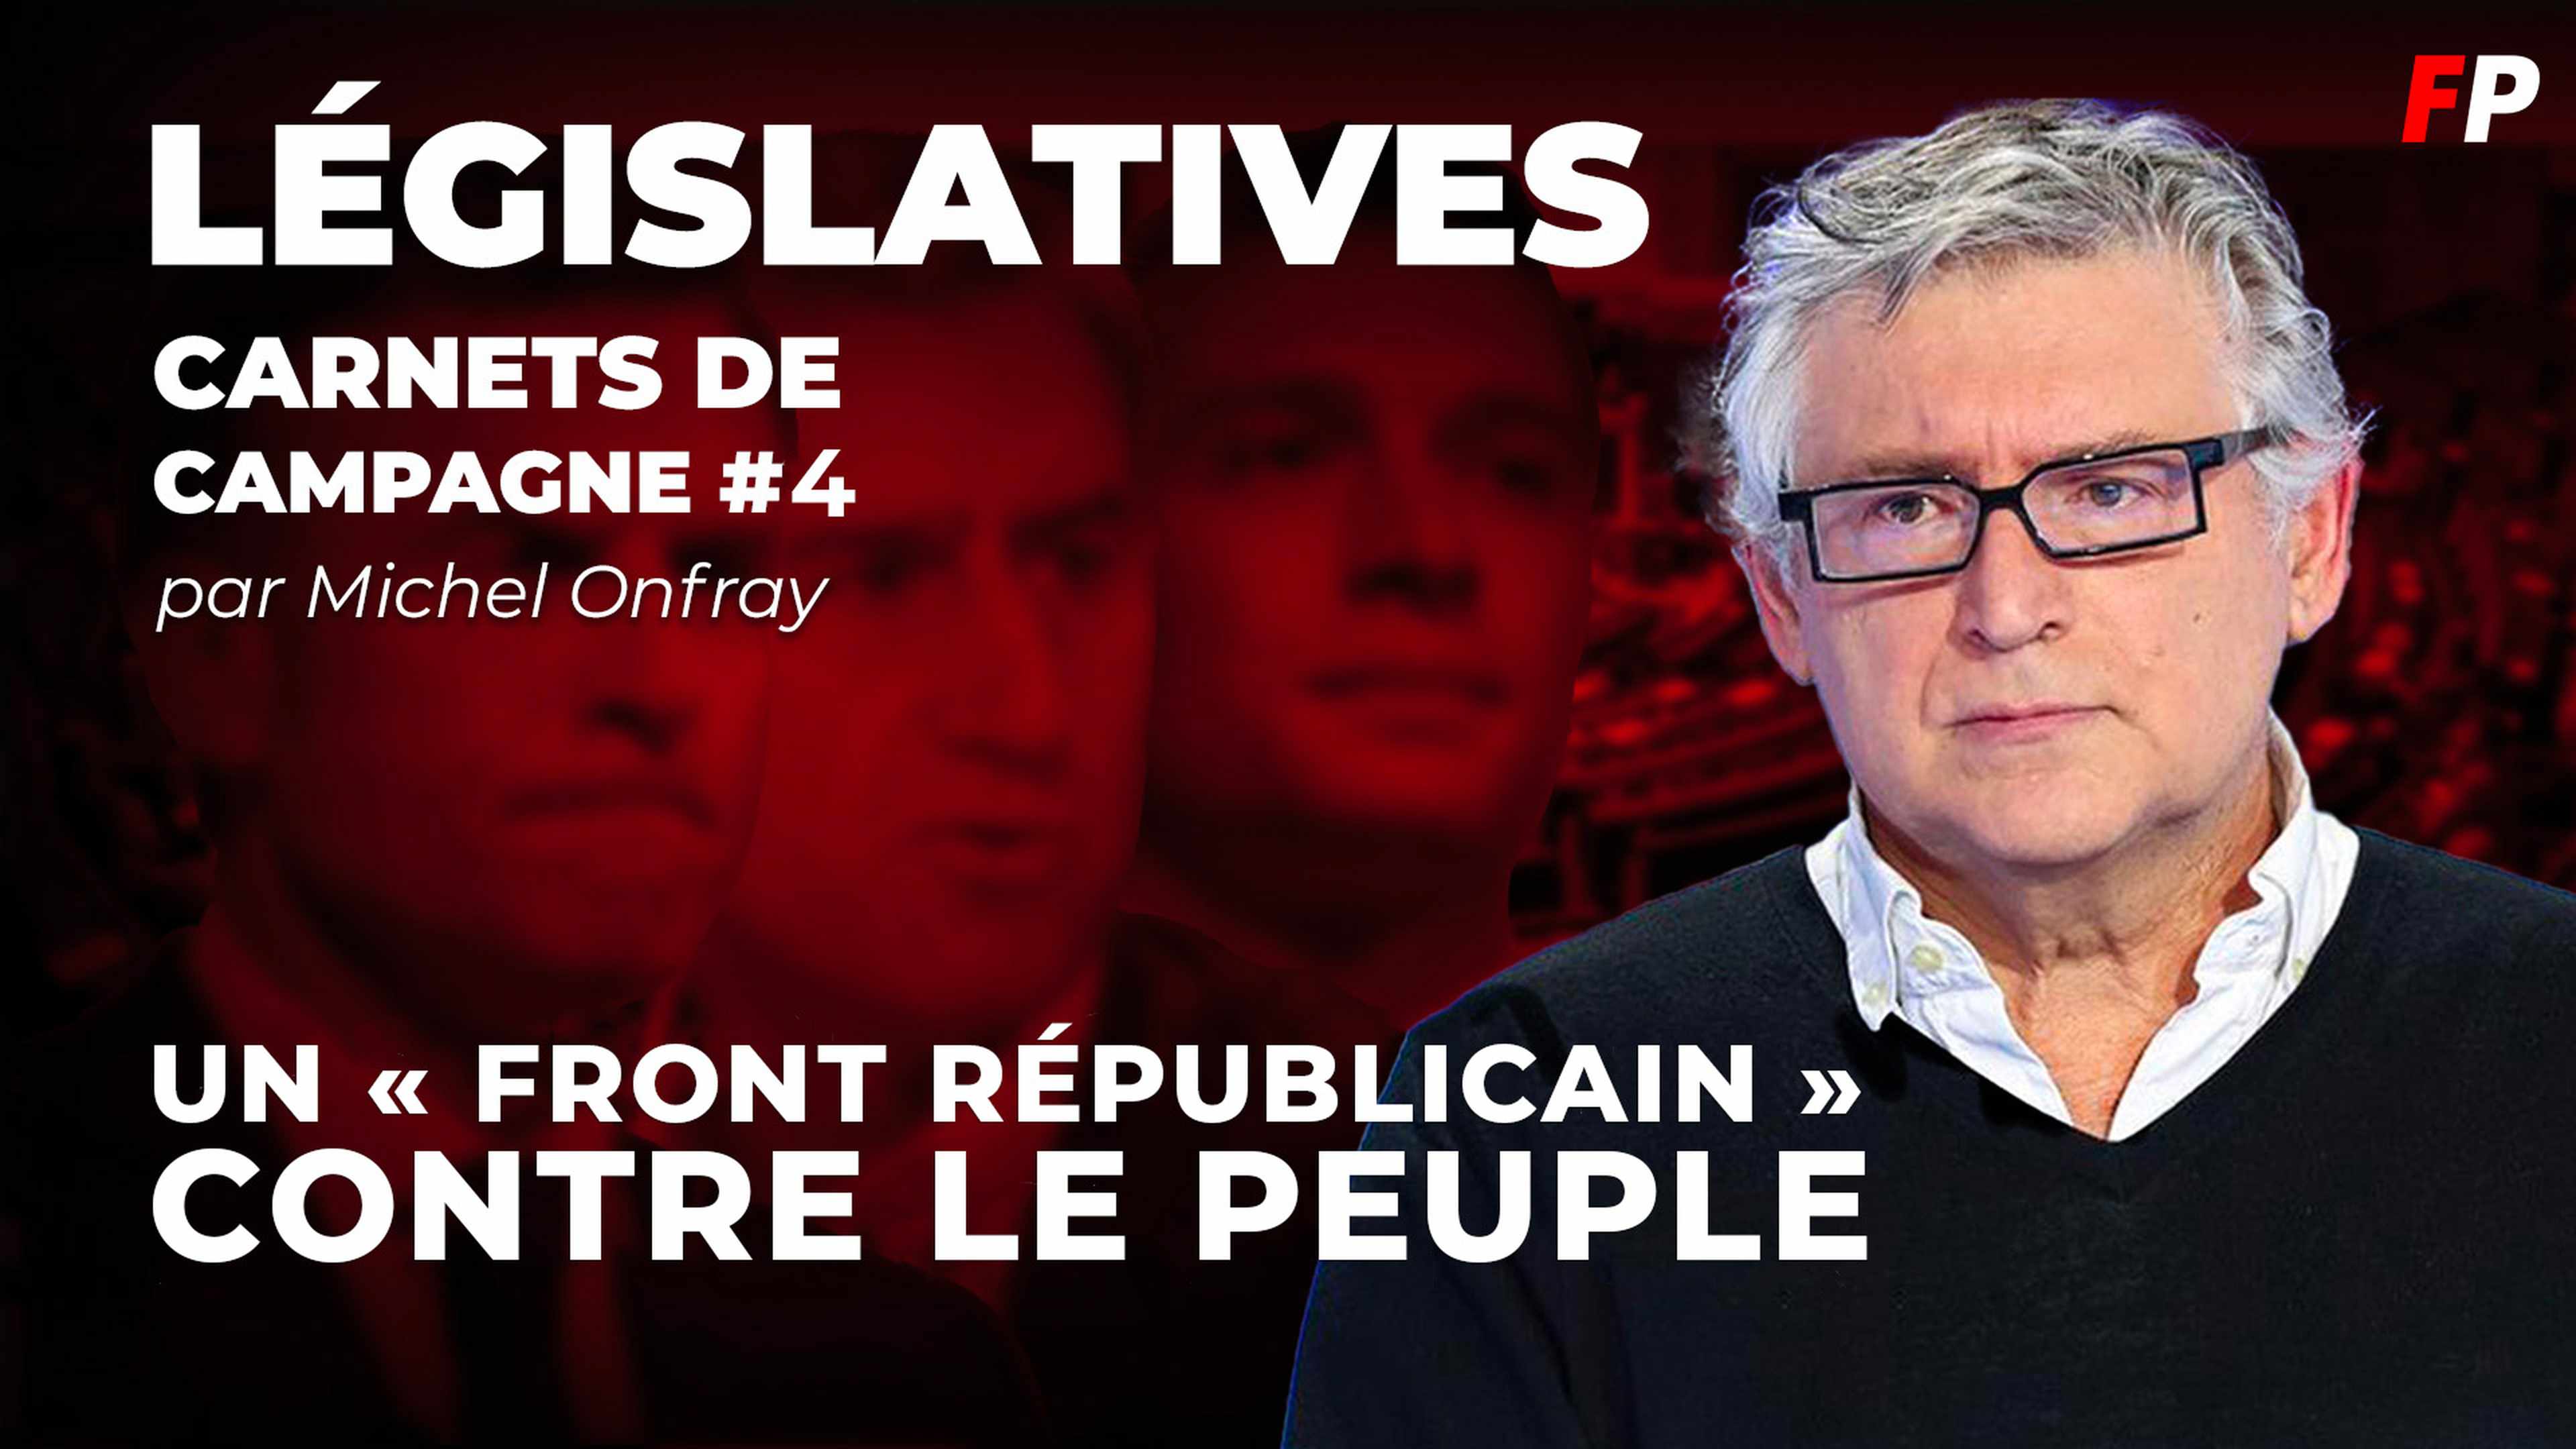 Législatives, le carnet de campagne de Michel Onfray (épisode 4) : un « front républicain » contre le peuple